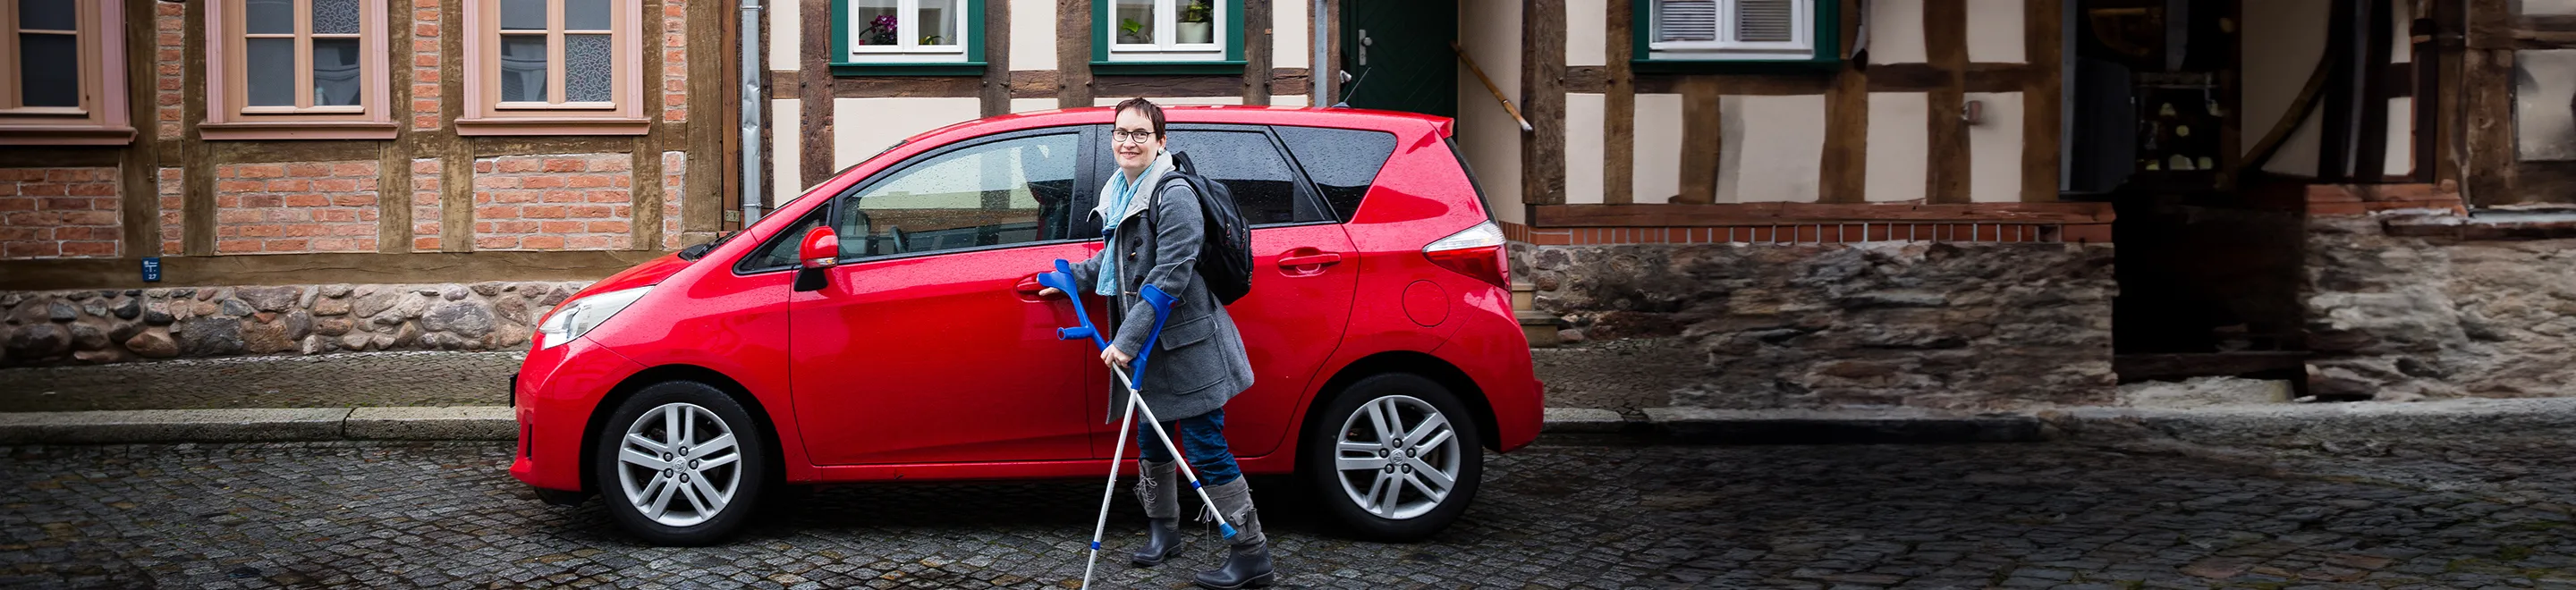 Eine Frau mit einer Gehbehinderung steht an der Fahrertür eines roten PKWs.